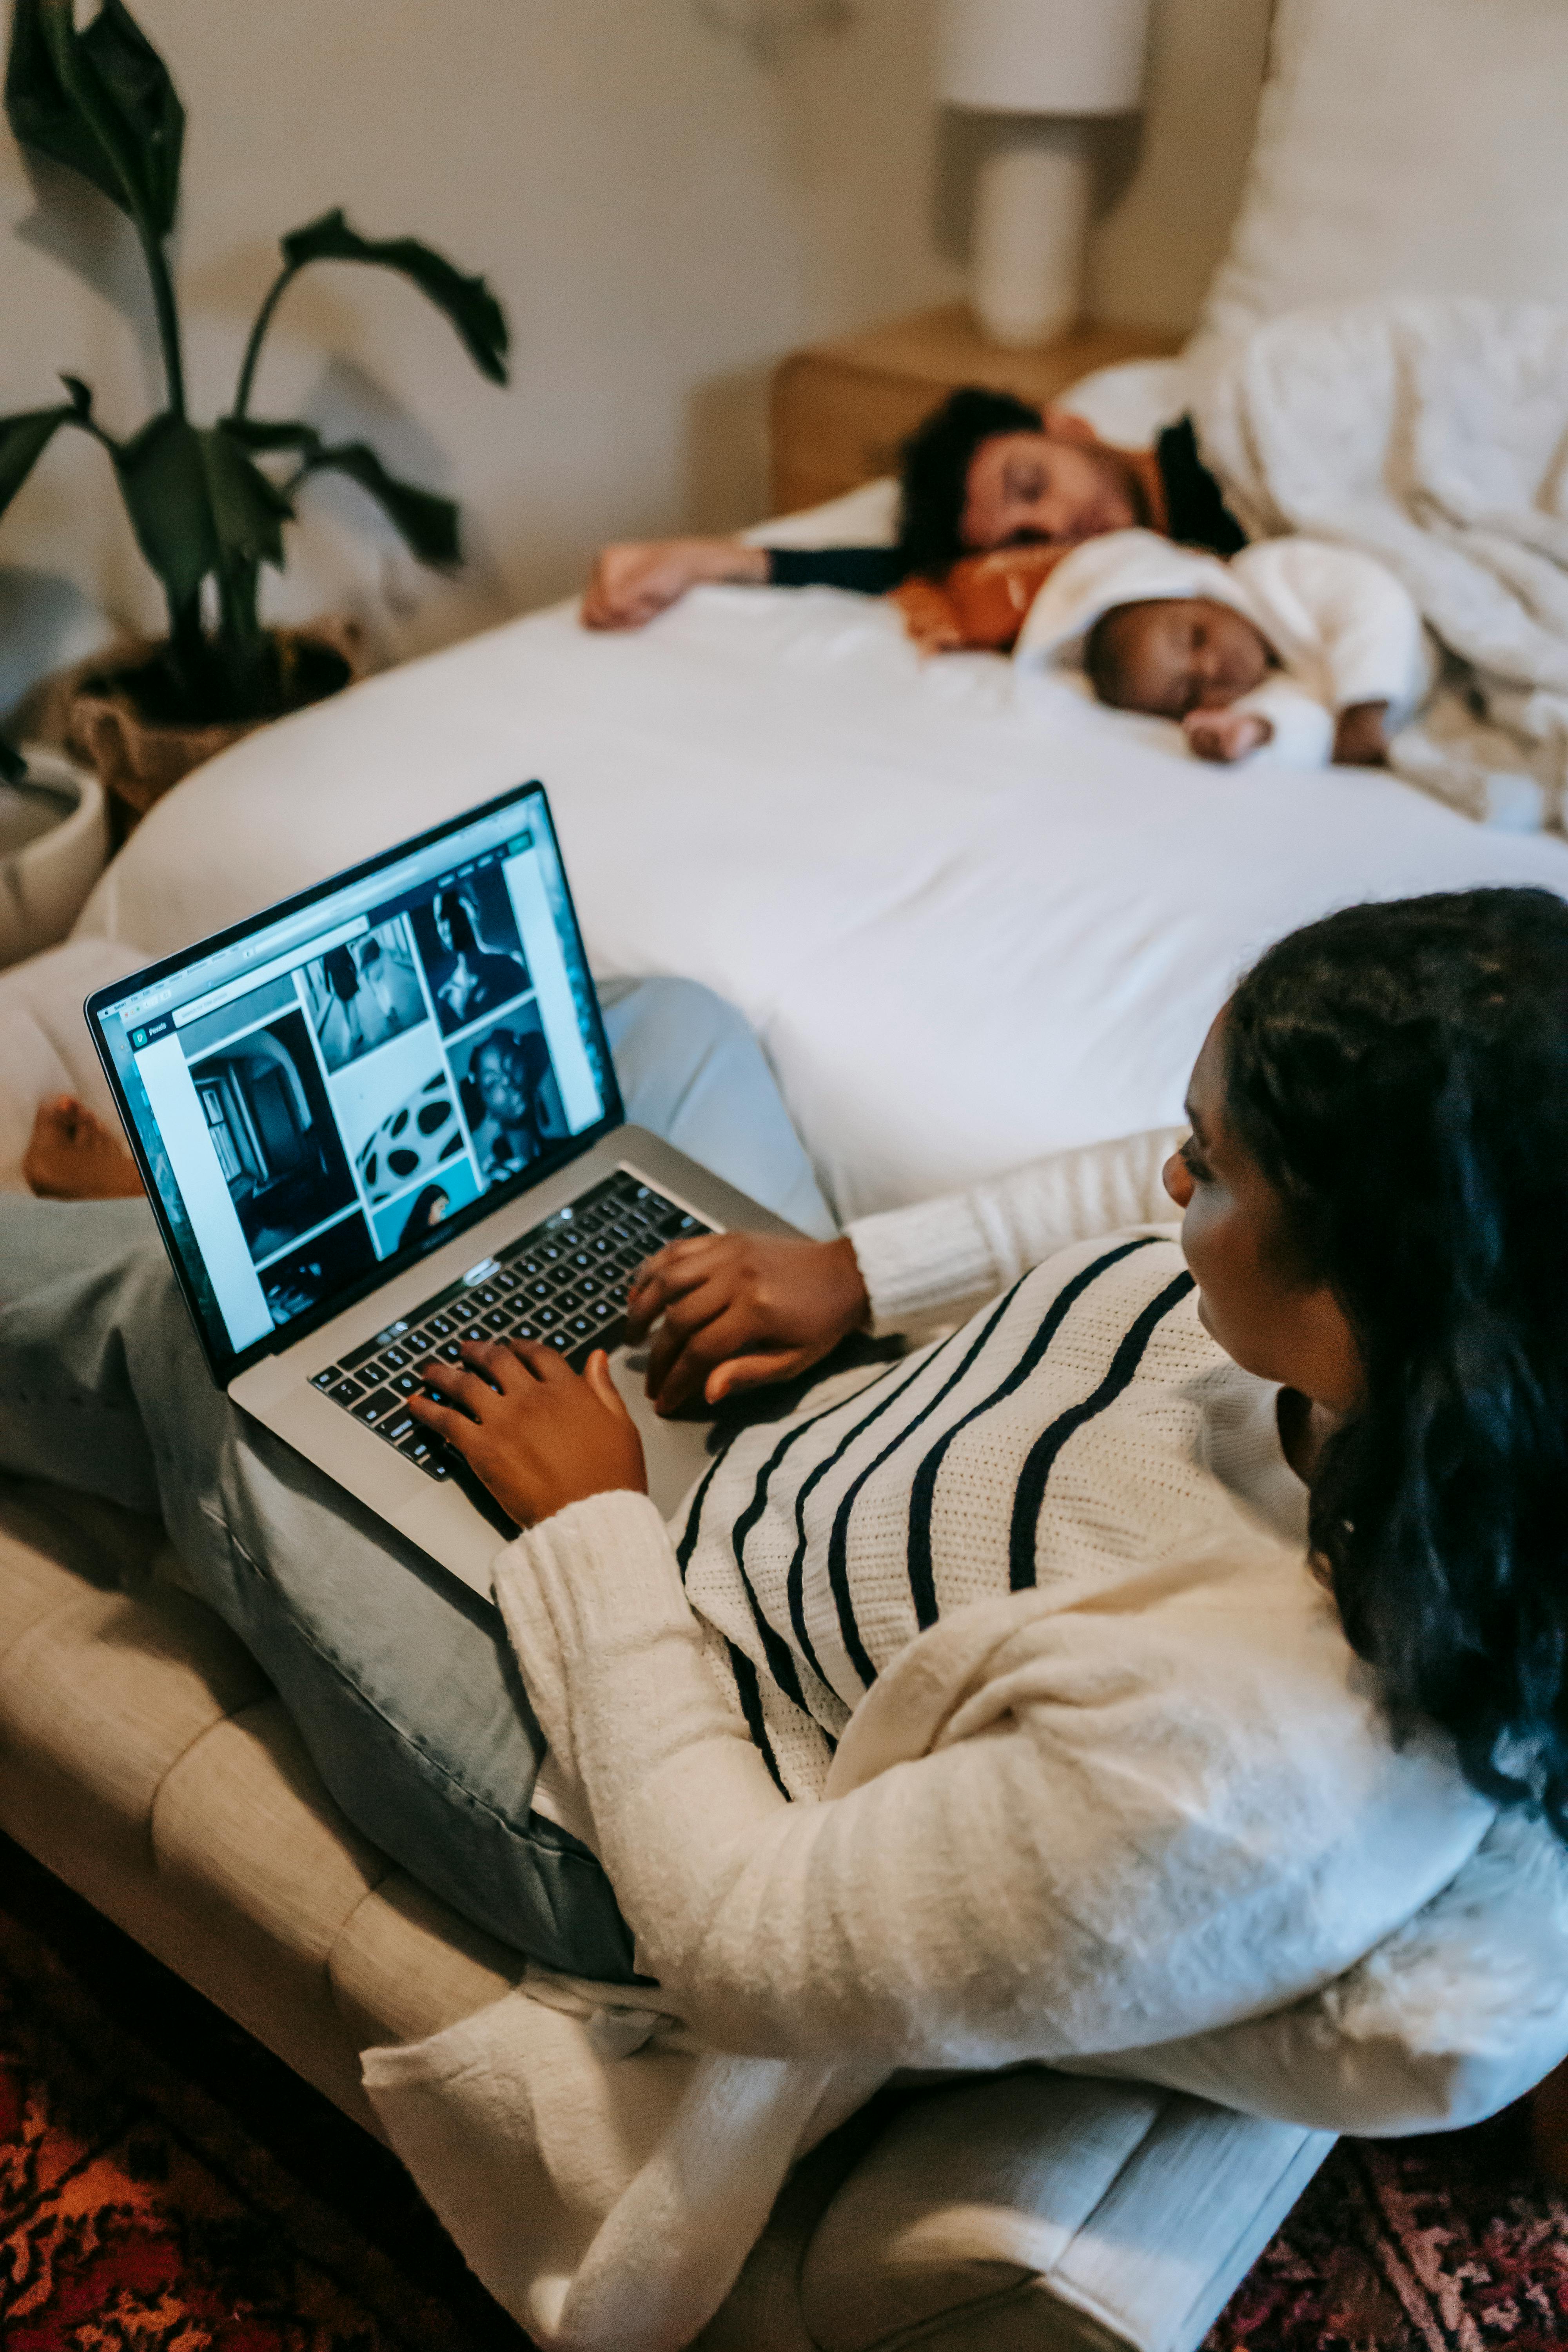 Una mujer con su portátil y su familia durmiendo en la cama | Fuente: Pexels